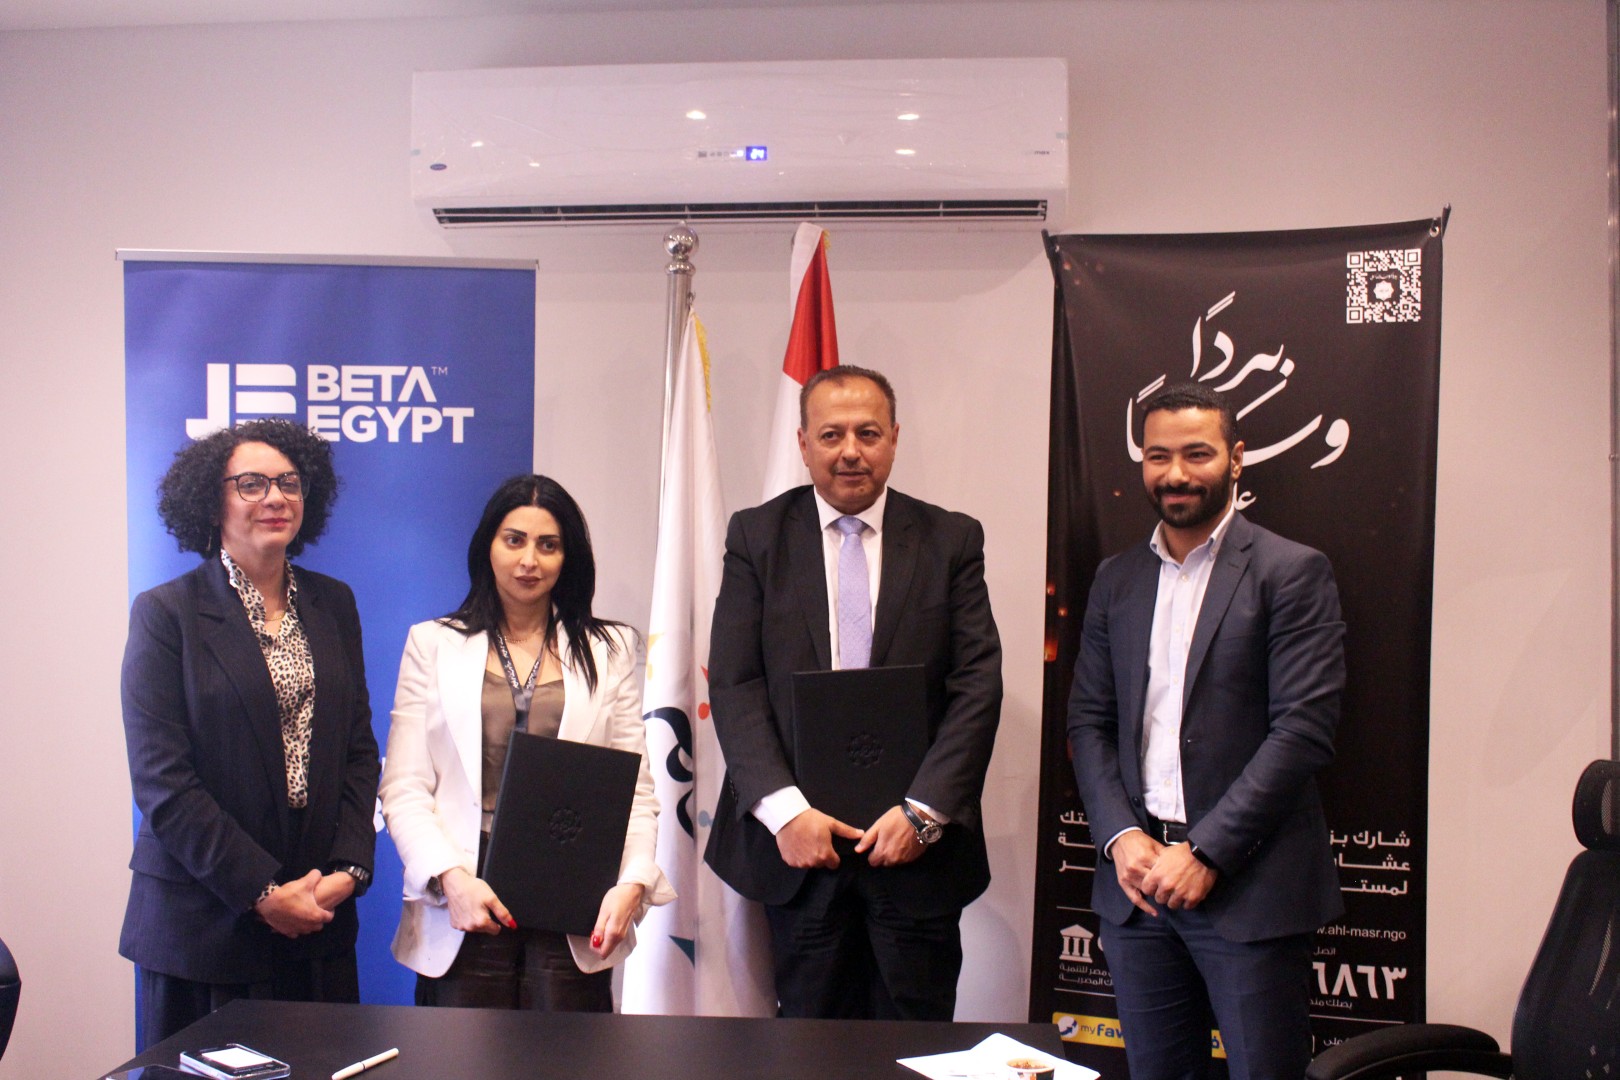 فعاليات توقيع بروتوكول تعاون بين شركة بيتا ايجيبت للتنمية العمرانية ومؤسسة أهل مصر للتنمية